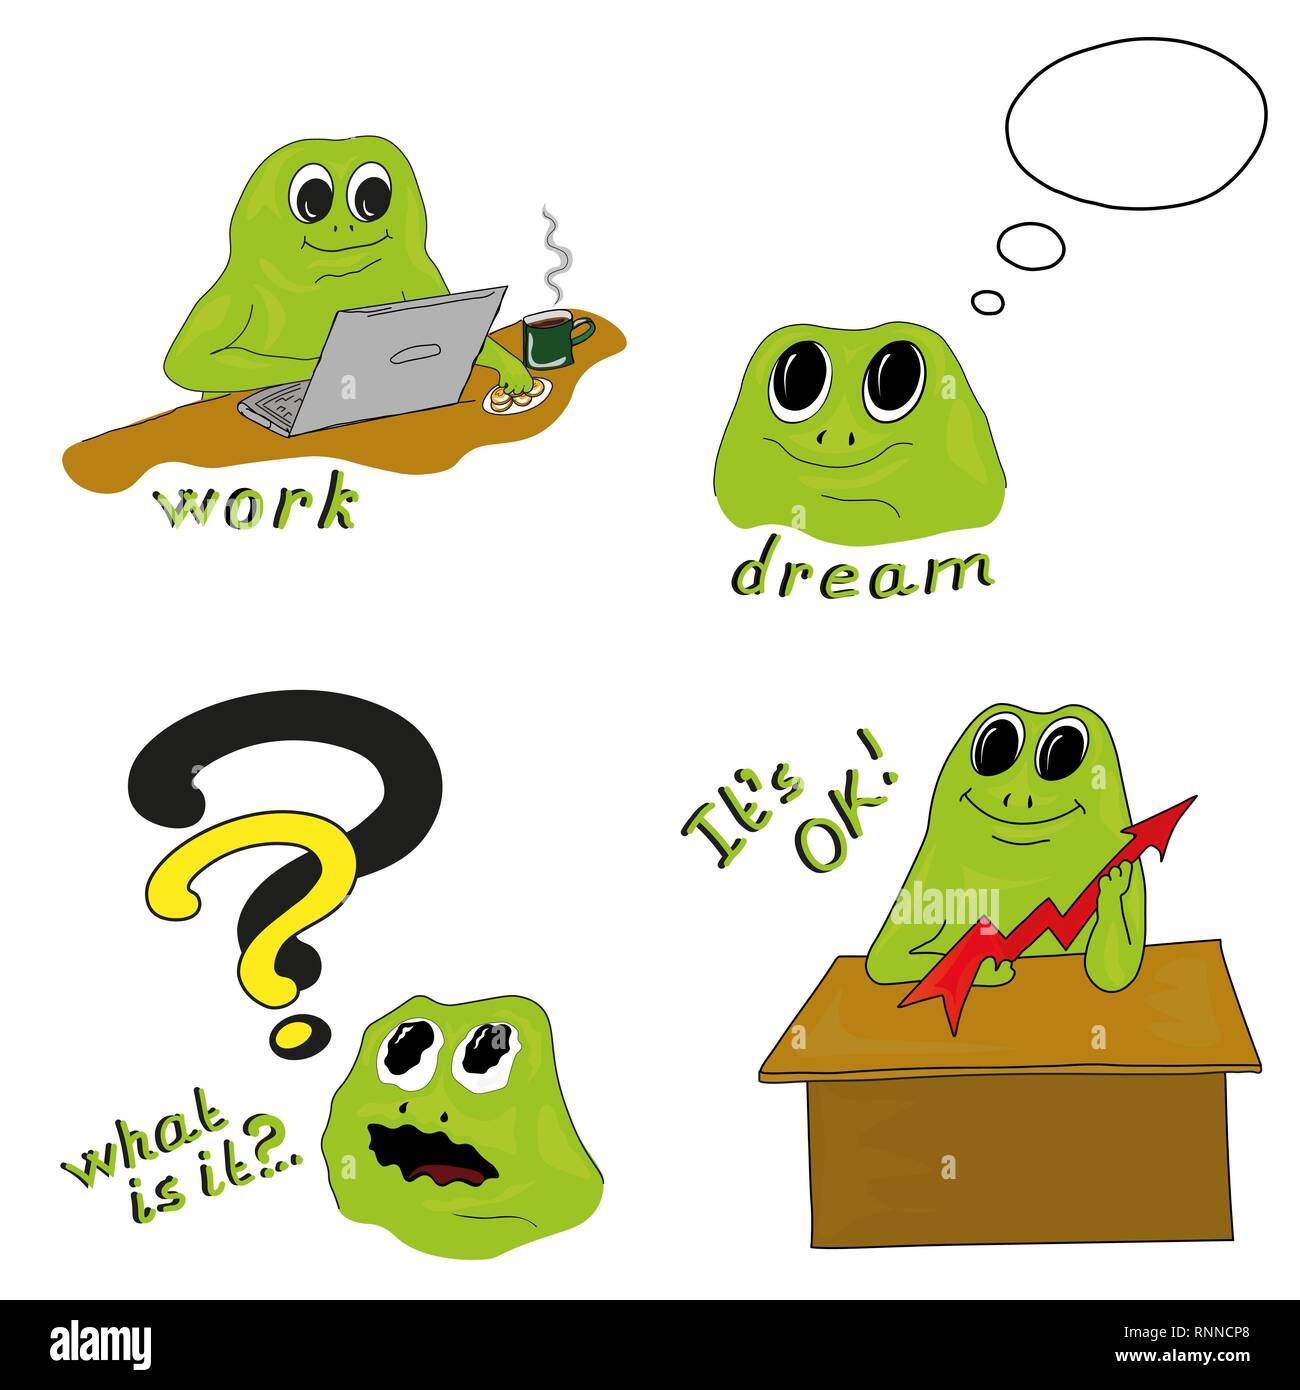 Processus de travail illustration vectorielle avec grenouille verte Illustration de Vecteur